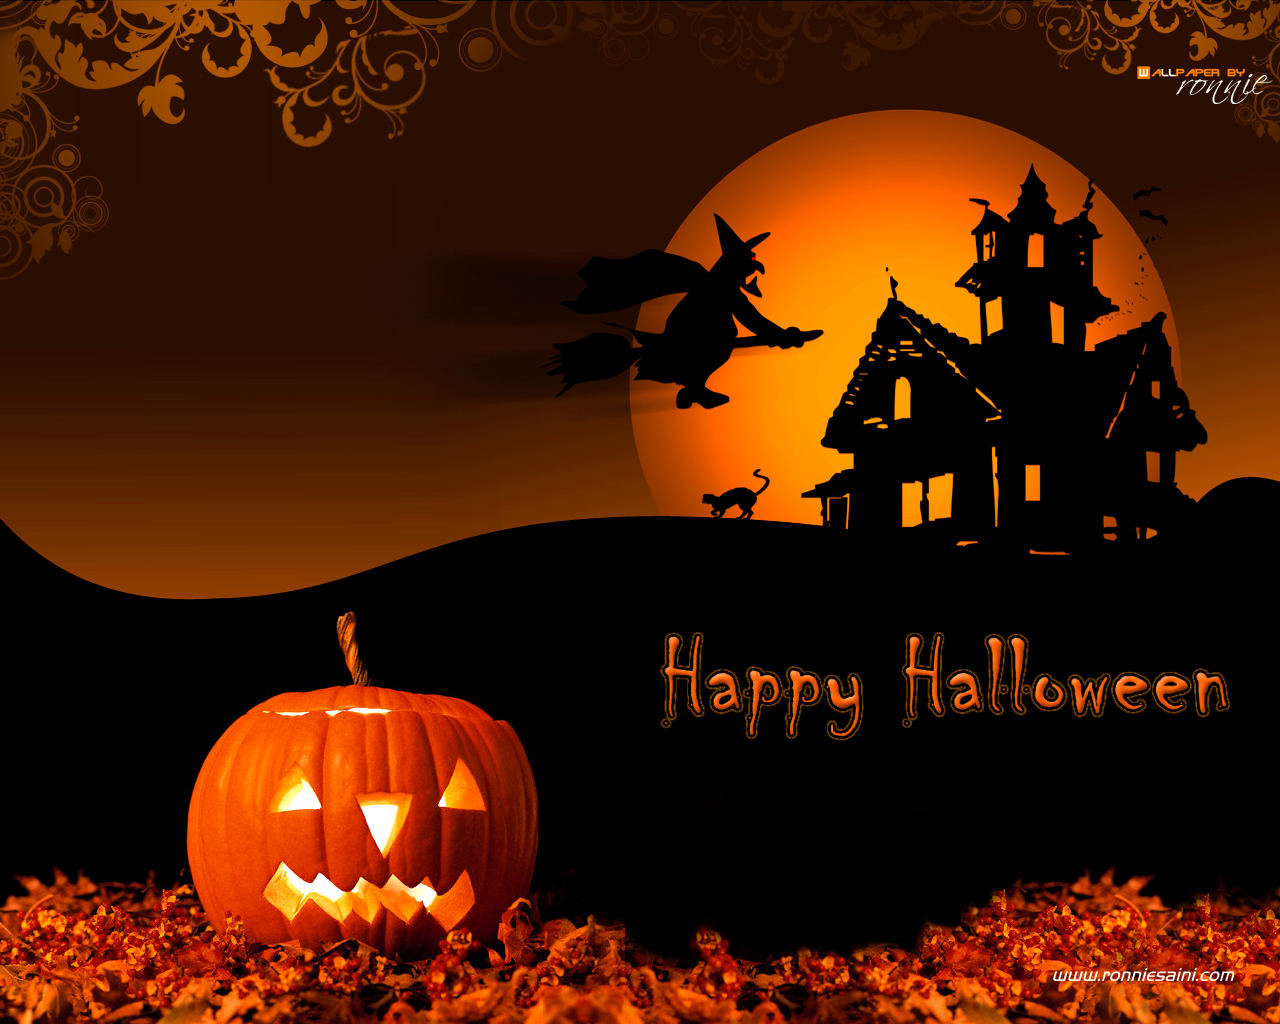 Download Free Wallpapers: Happy Halloween